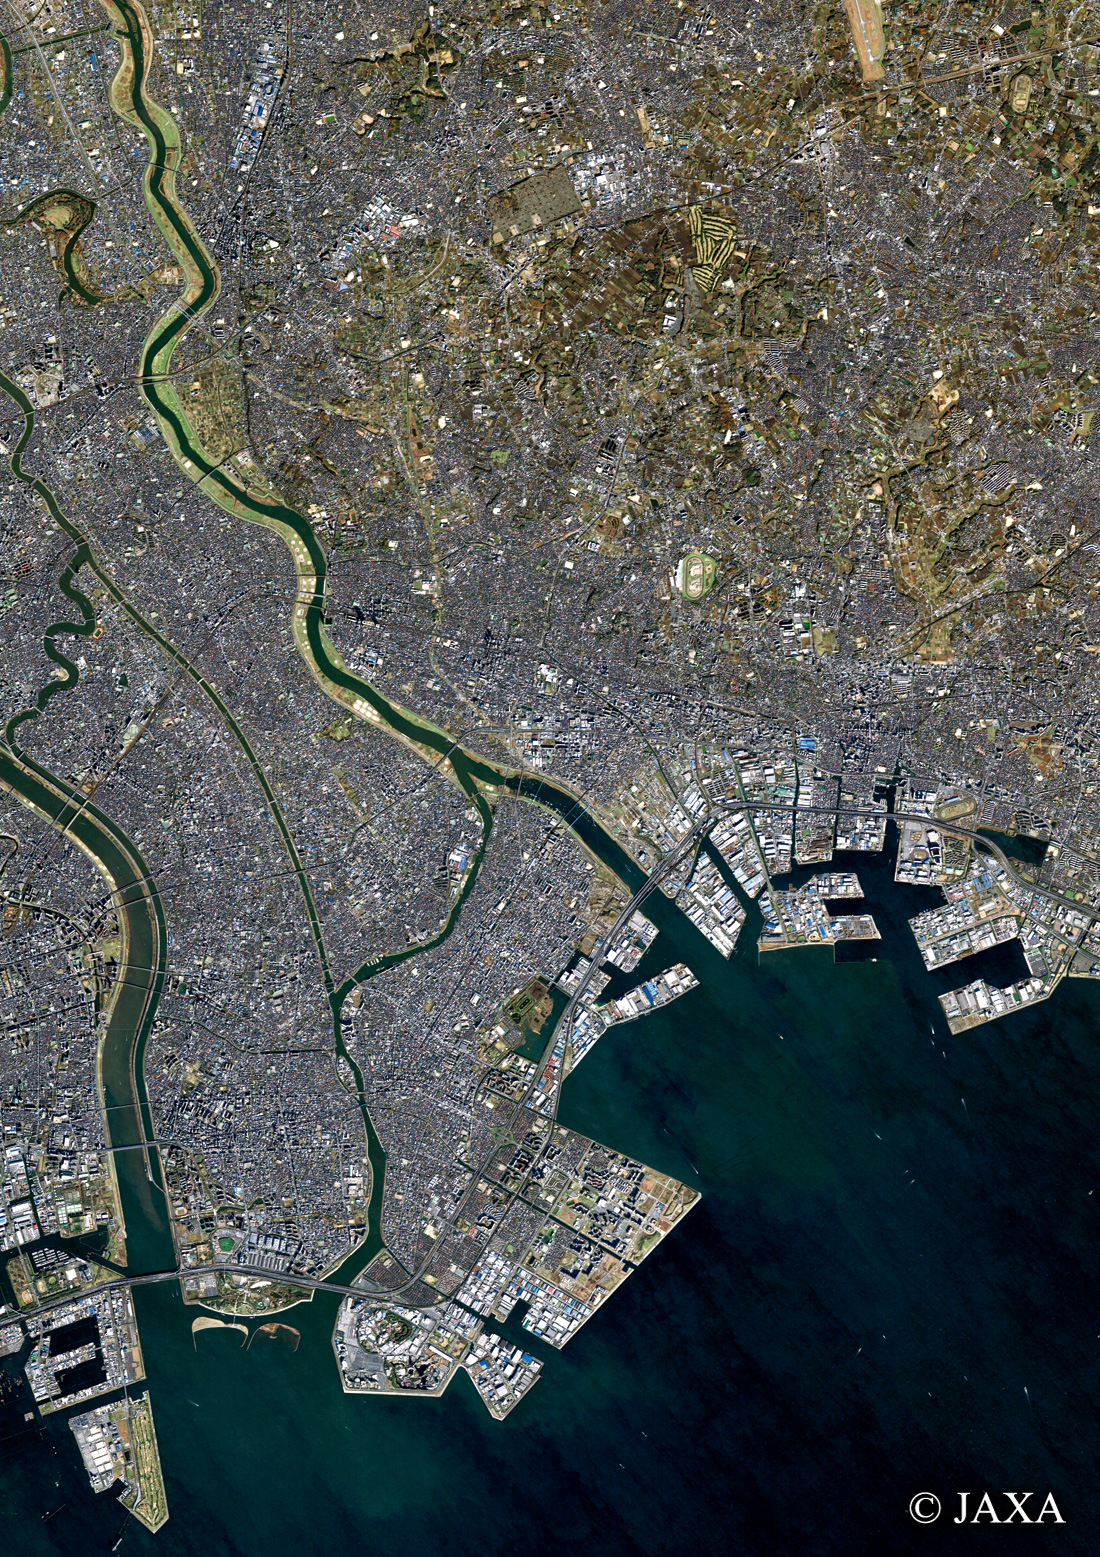 だいちから見た日本の都市 市川市周辺:衛星画像